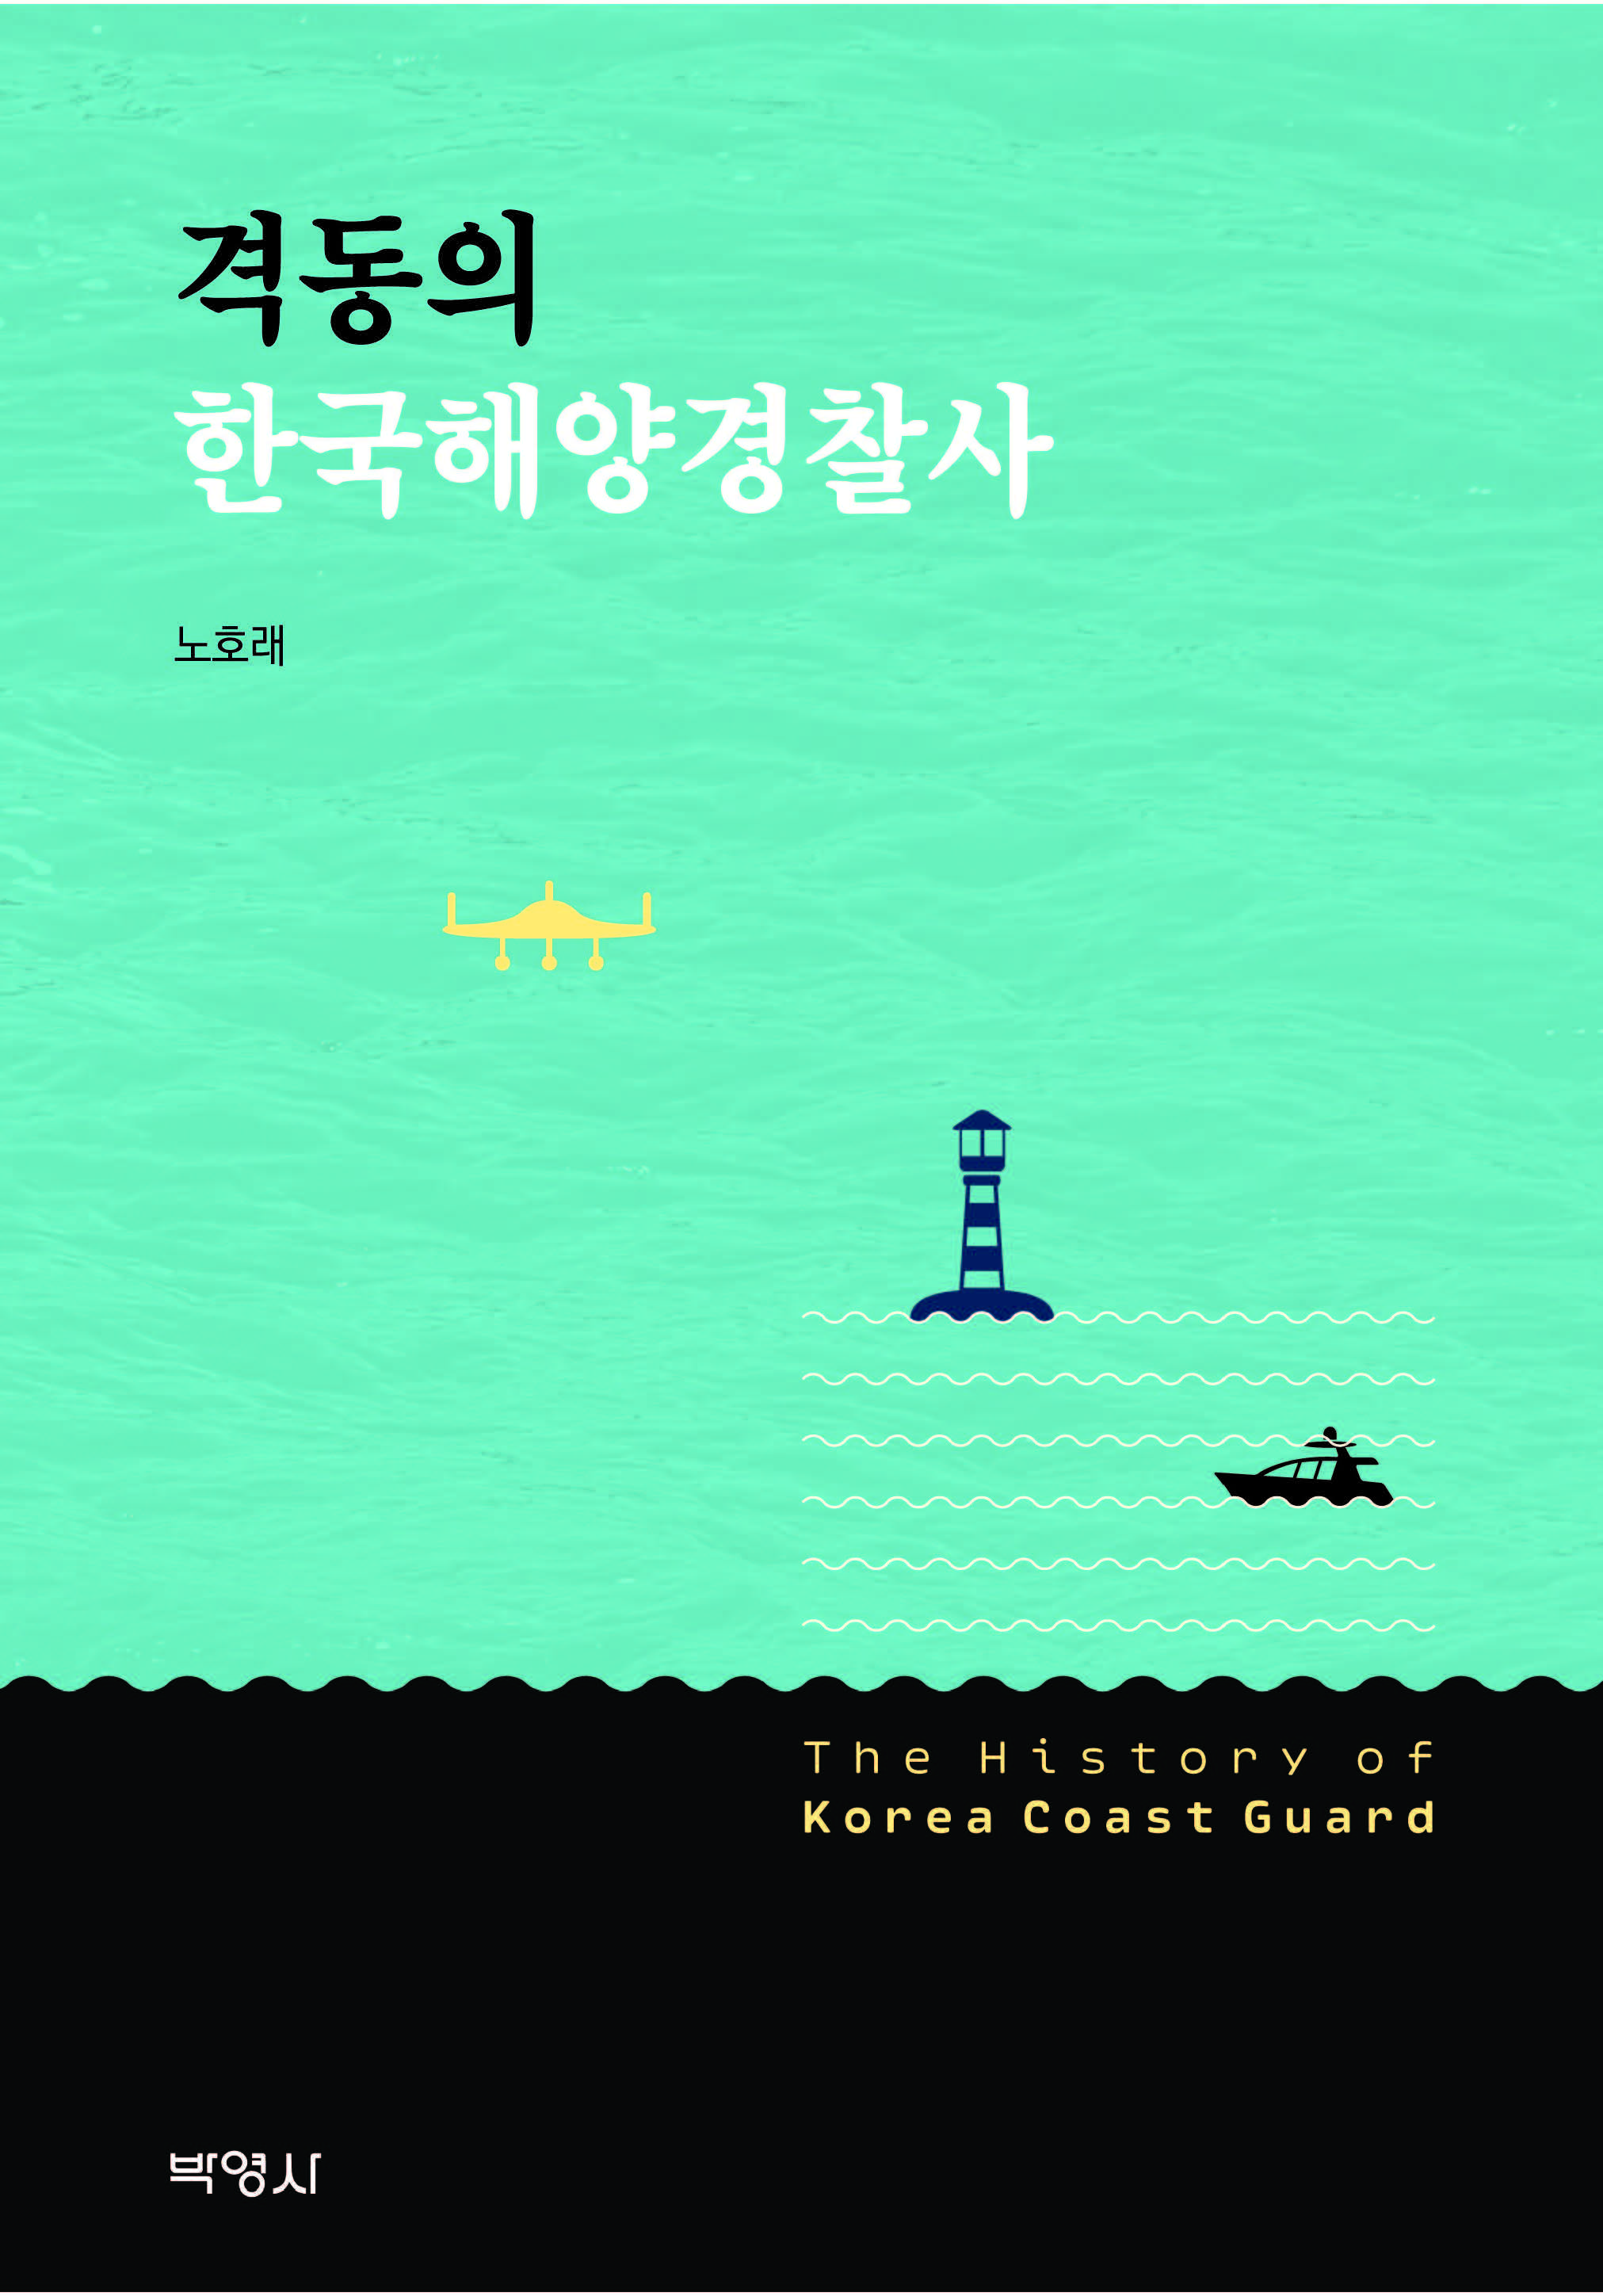  격동의 한국해양경찰사